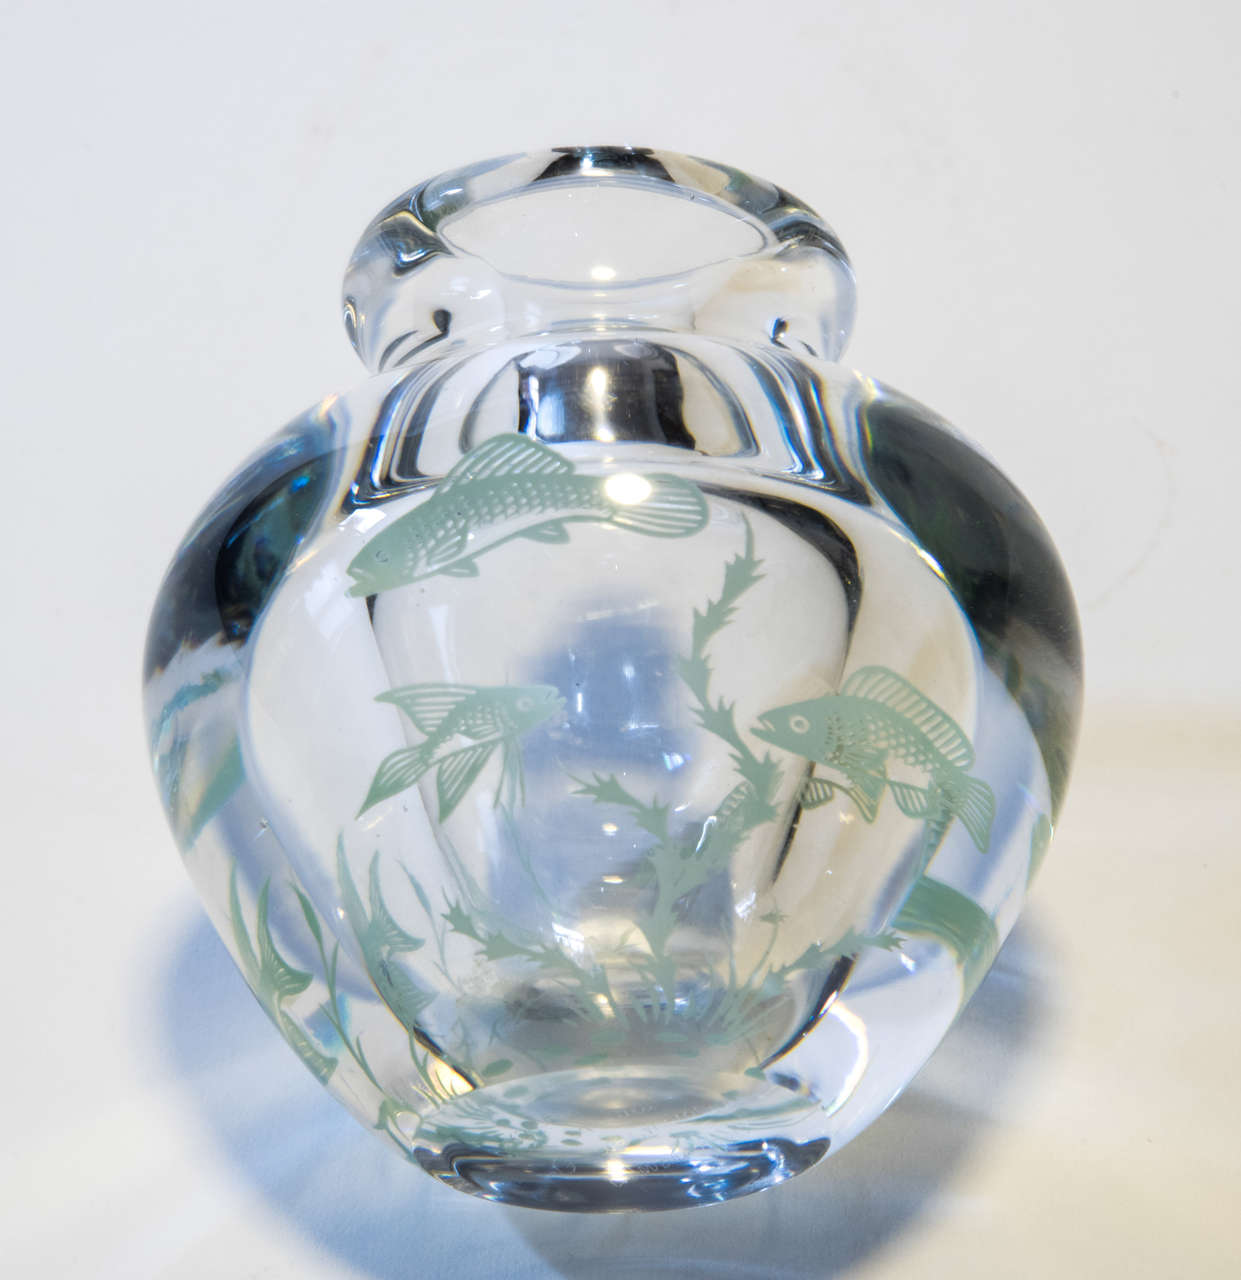 Graal glass vase designed by Edward Hald for Orrefors.
Signed and numbered Orrefors, Graal 1094P Edward Hald